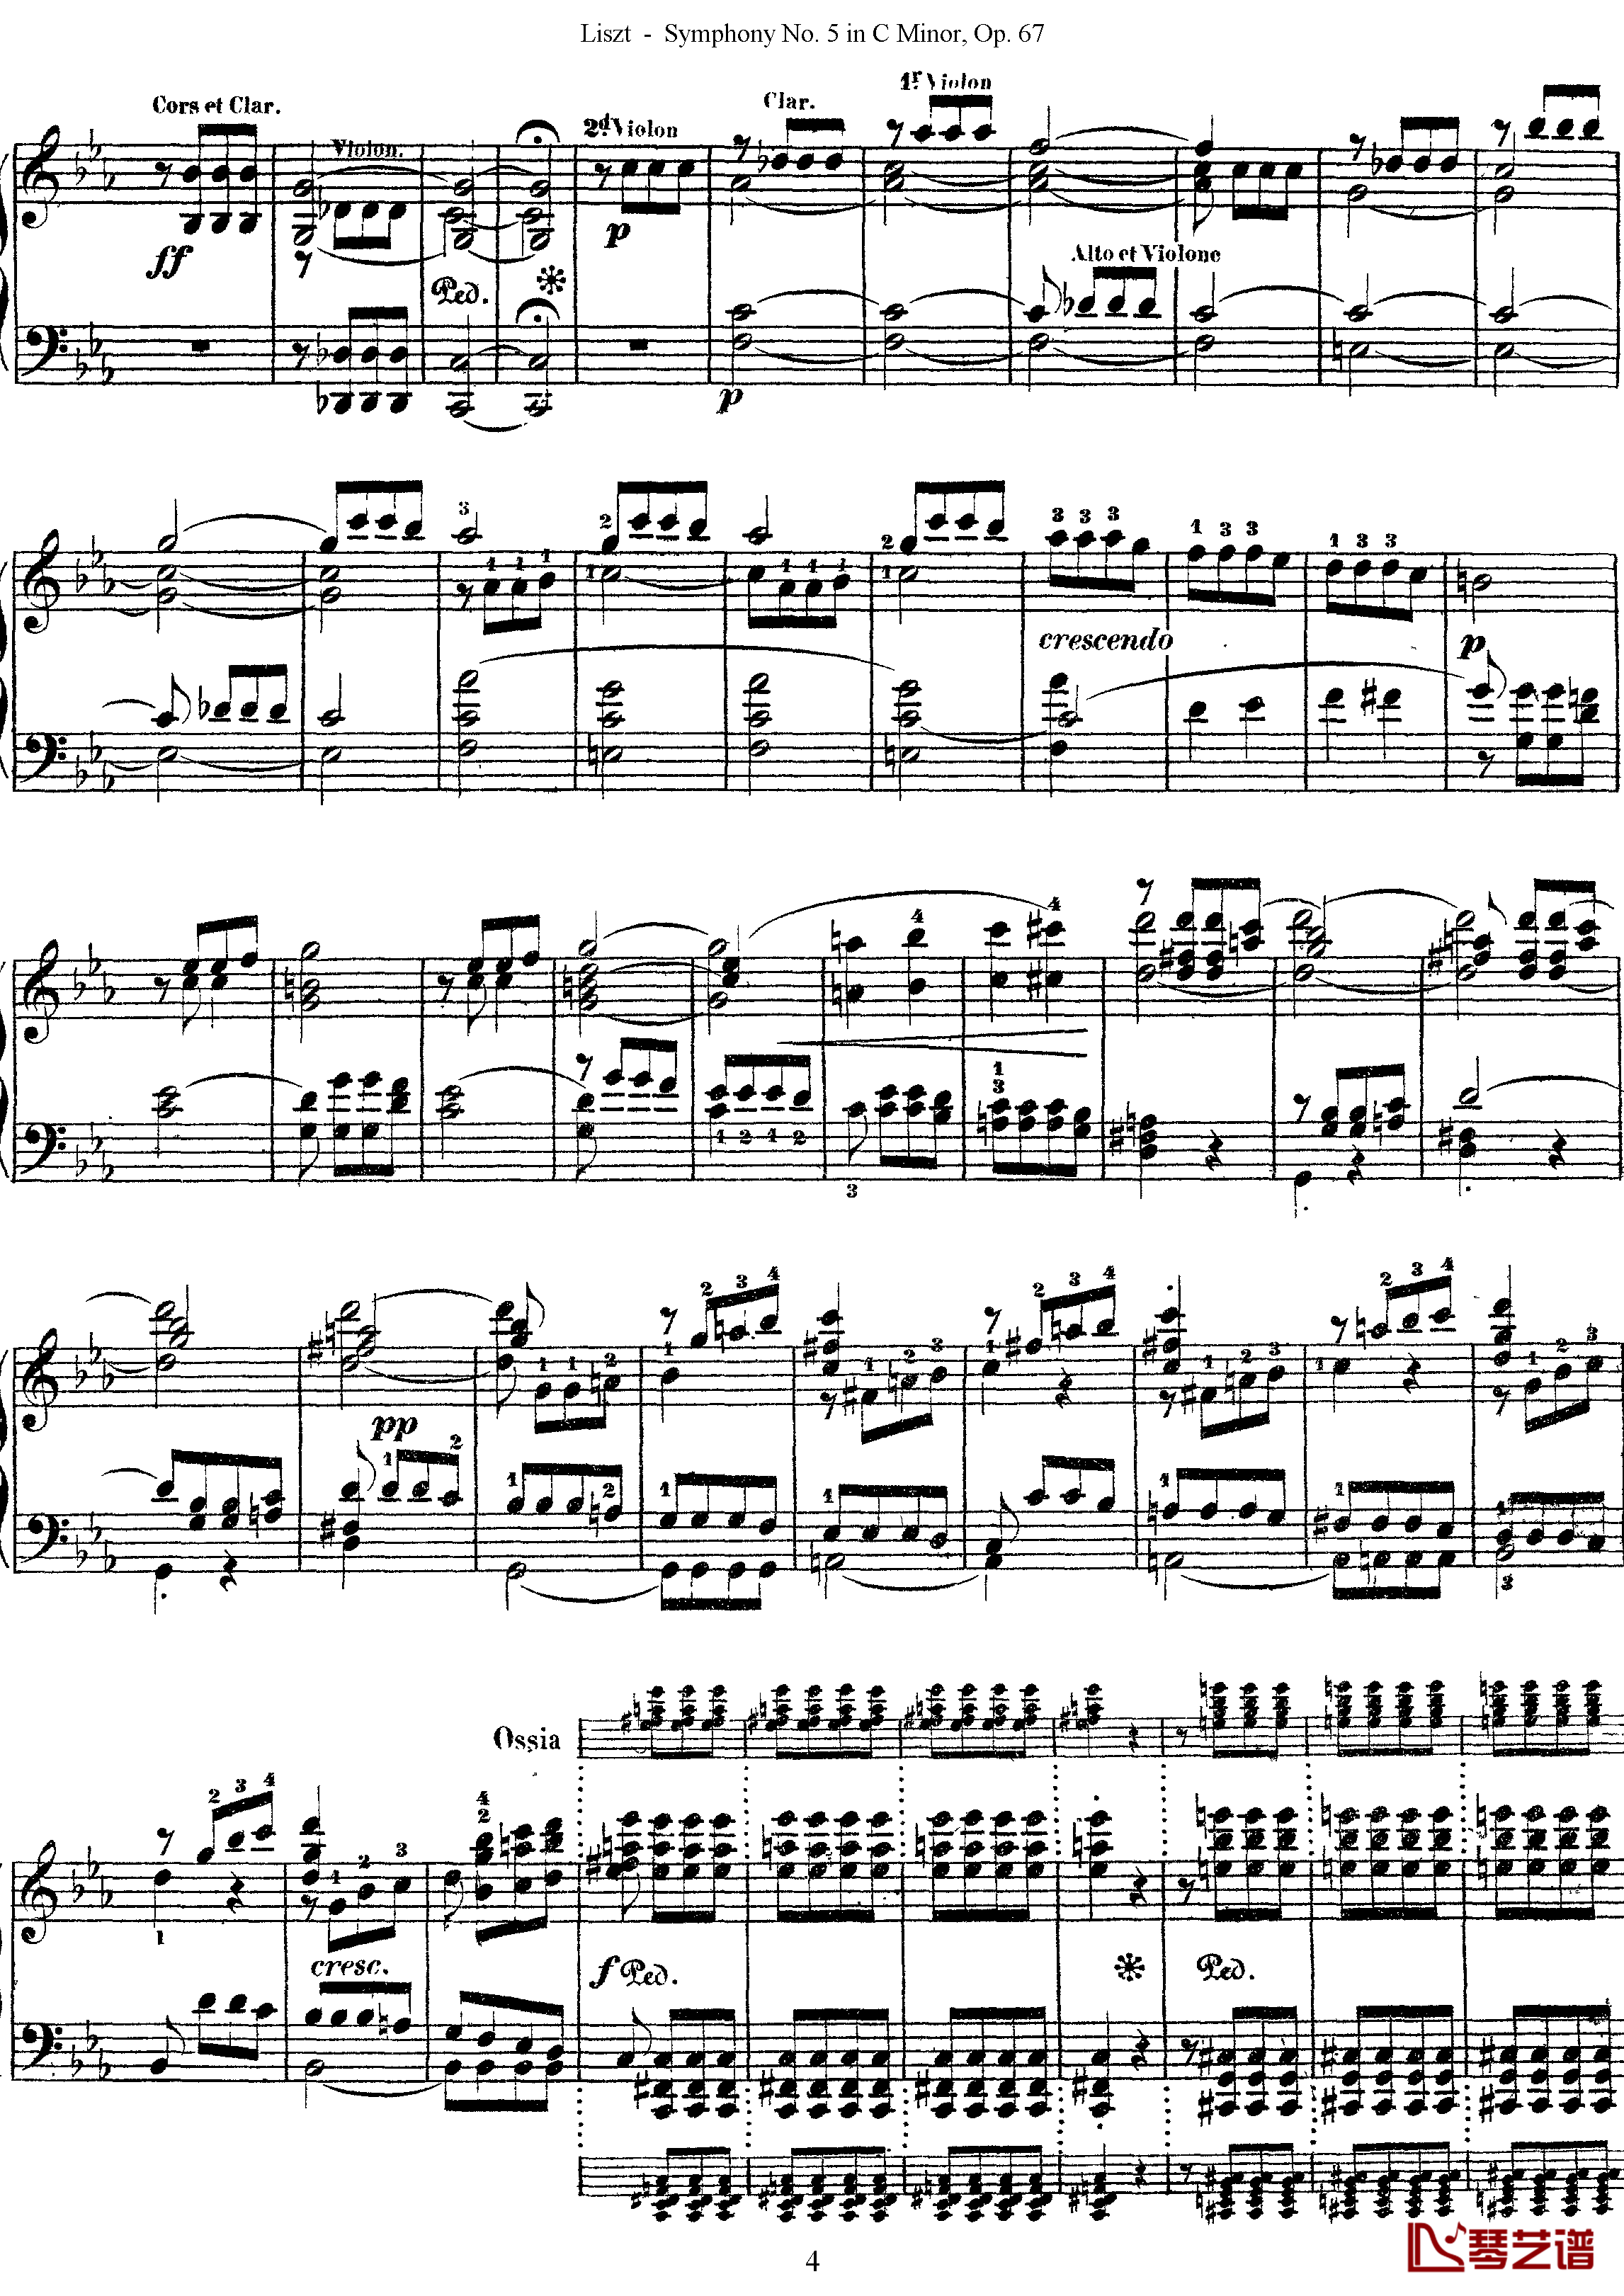 第五交响乐的钢琴曲钢琴谱-李斯特-李斯特改编自贝多芬4